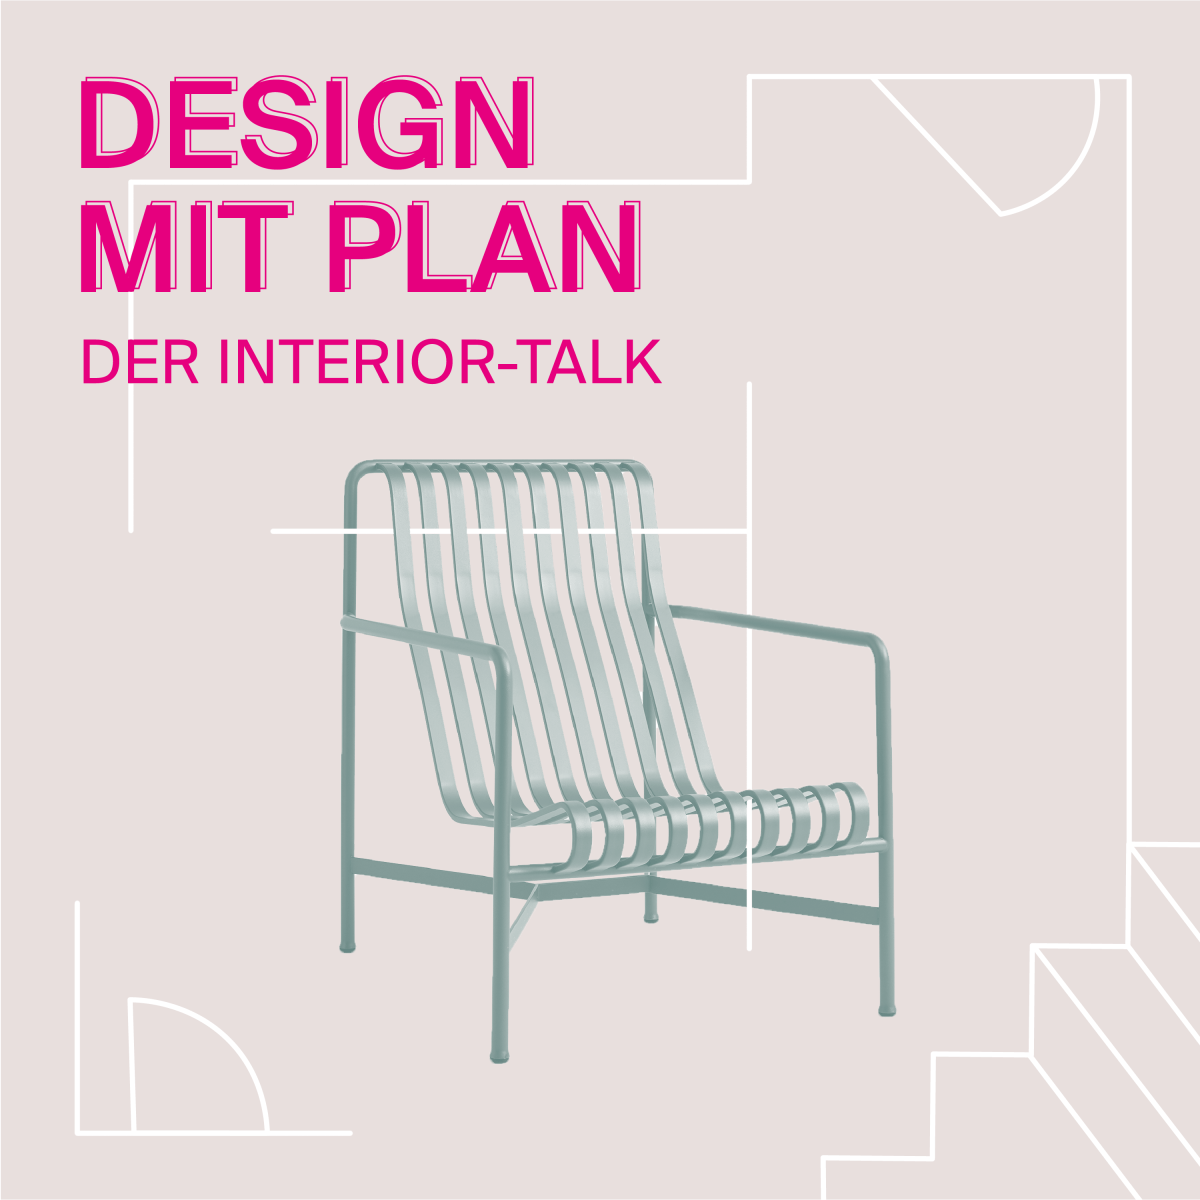 Design mit Plan: Podcast von unserplanb und DesignService+